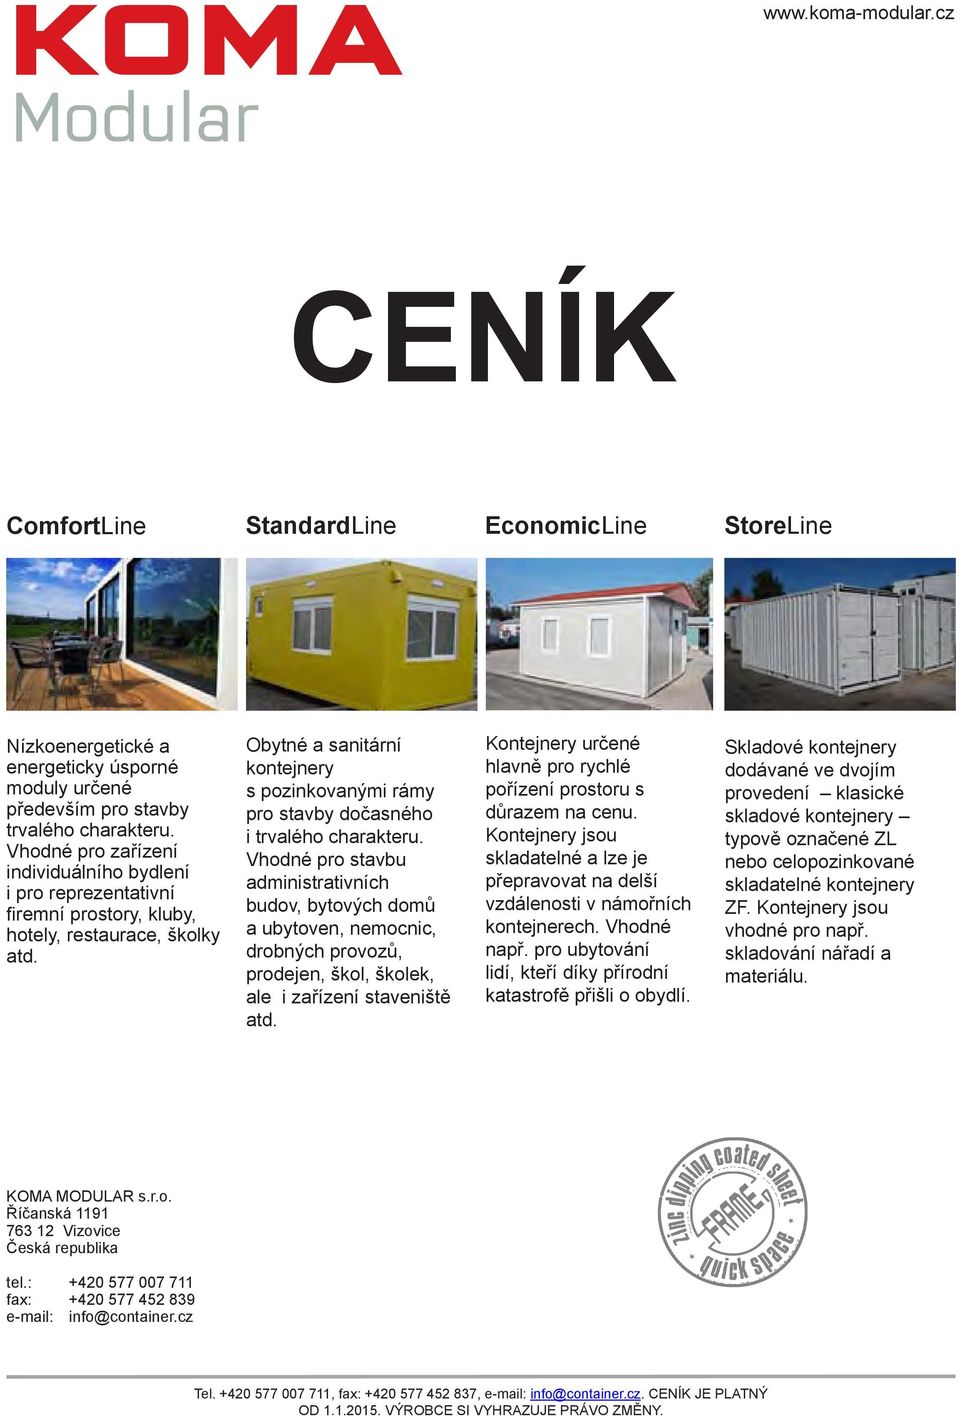 Obytné a sanitární kontejnery s pozinkovanými rámy pro stavby dočasného i trvalého charakteru.